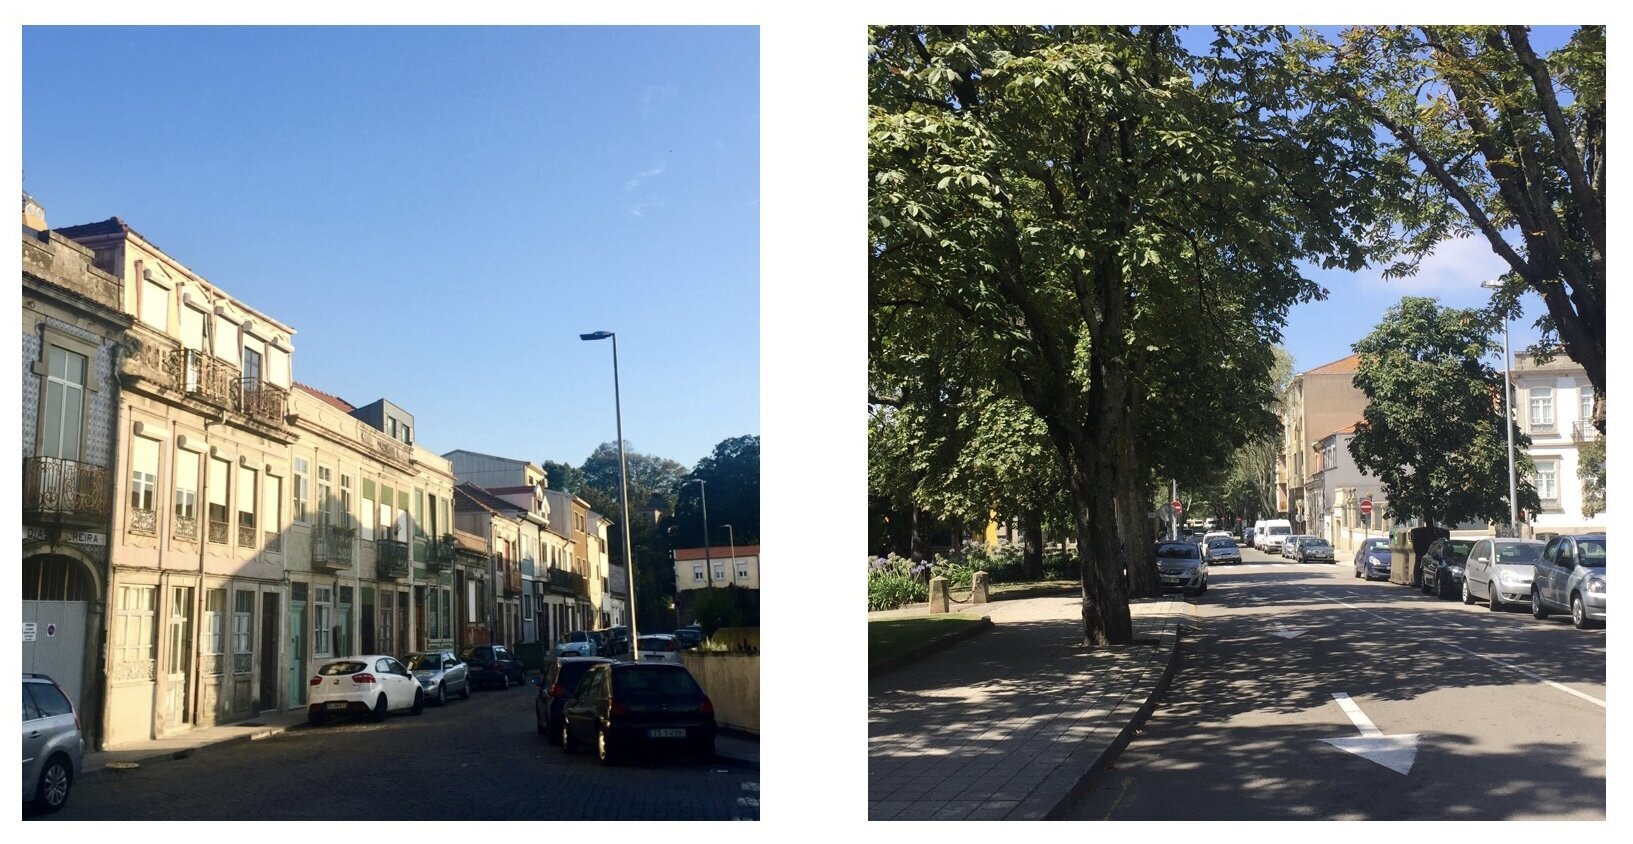 Кое-где в Бонфиме встречается брусчатка, но в целом улицы широкие и современные.